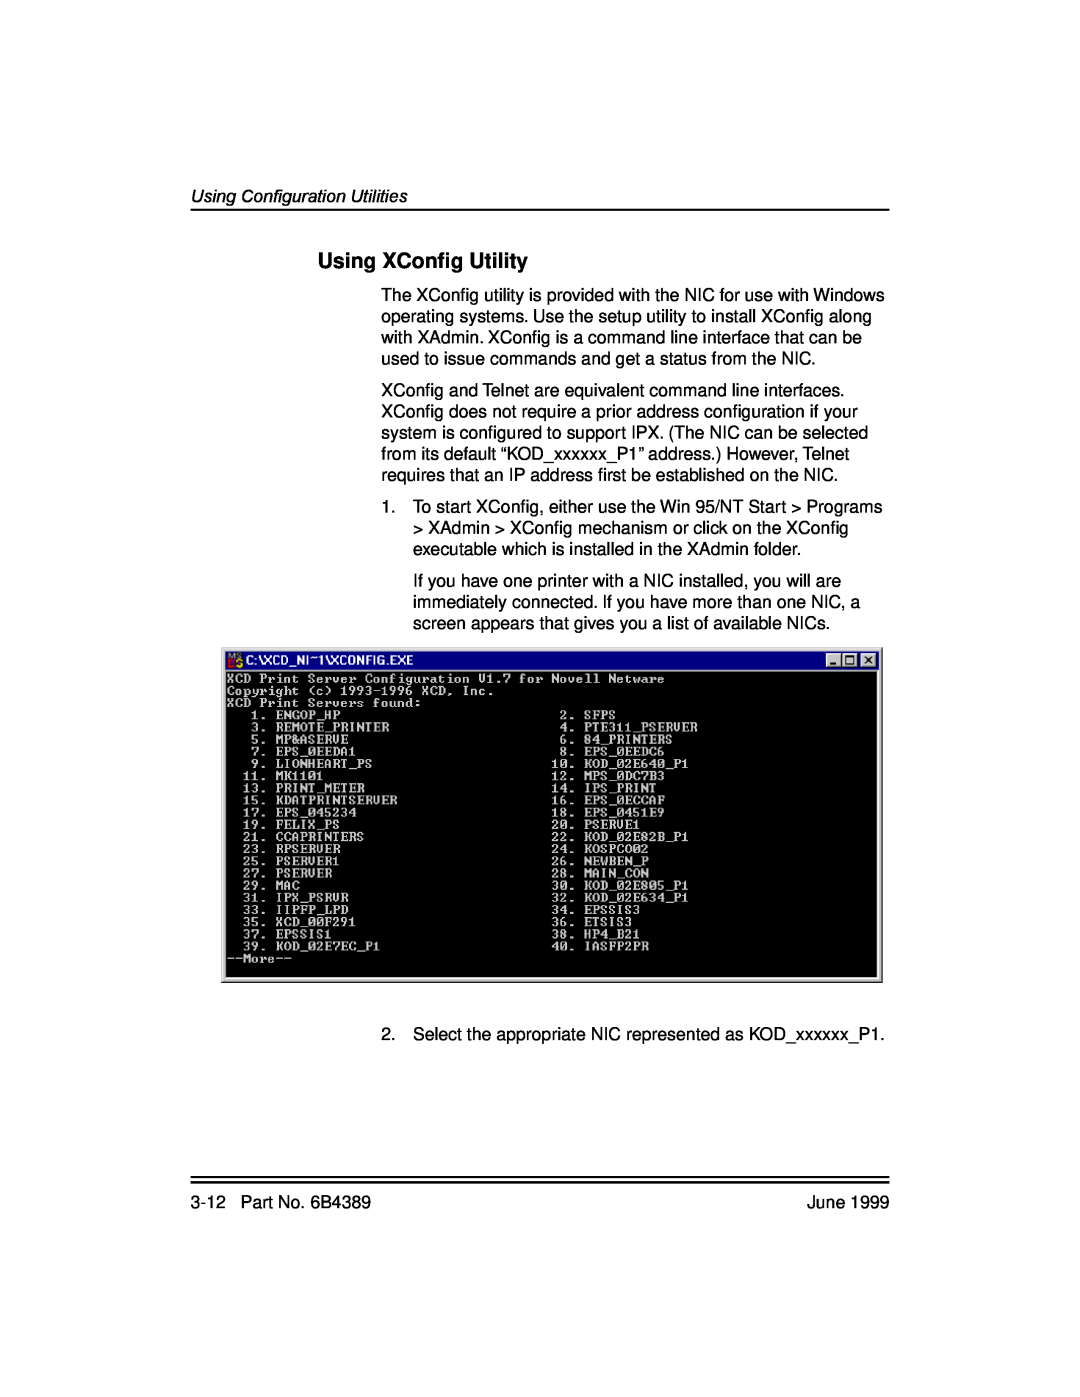 Kodak 8670, 8660 manual Using XConﬁg Utility, Using Configuration Utilities 